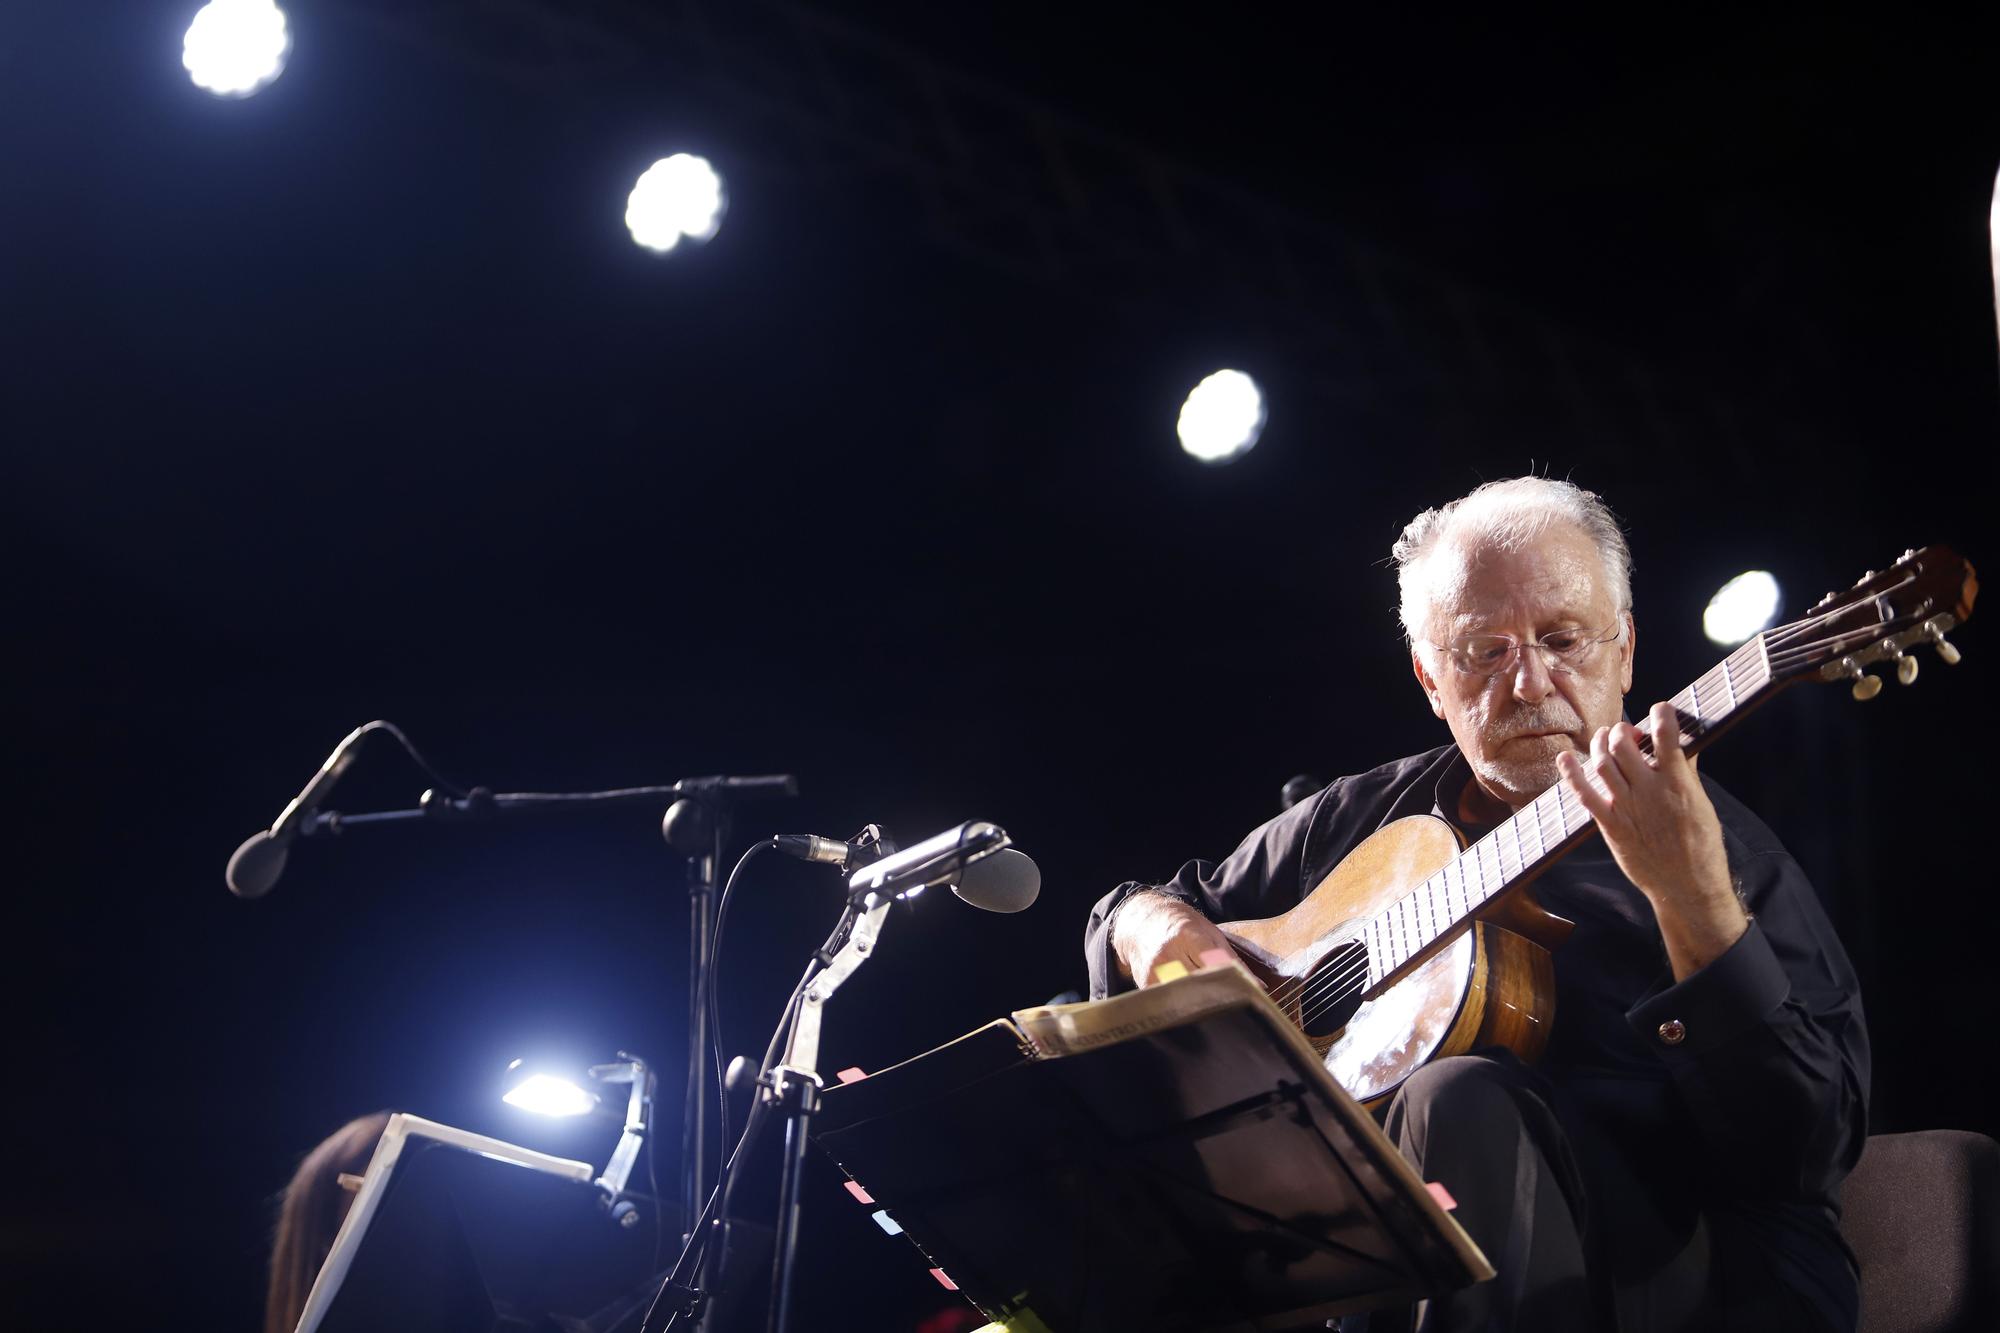 El concierto de Pepe Romero en La Malagueta, en imágenes